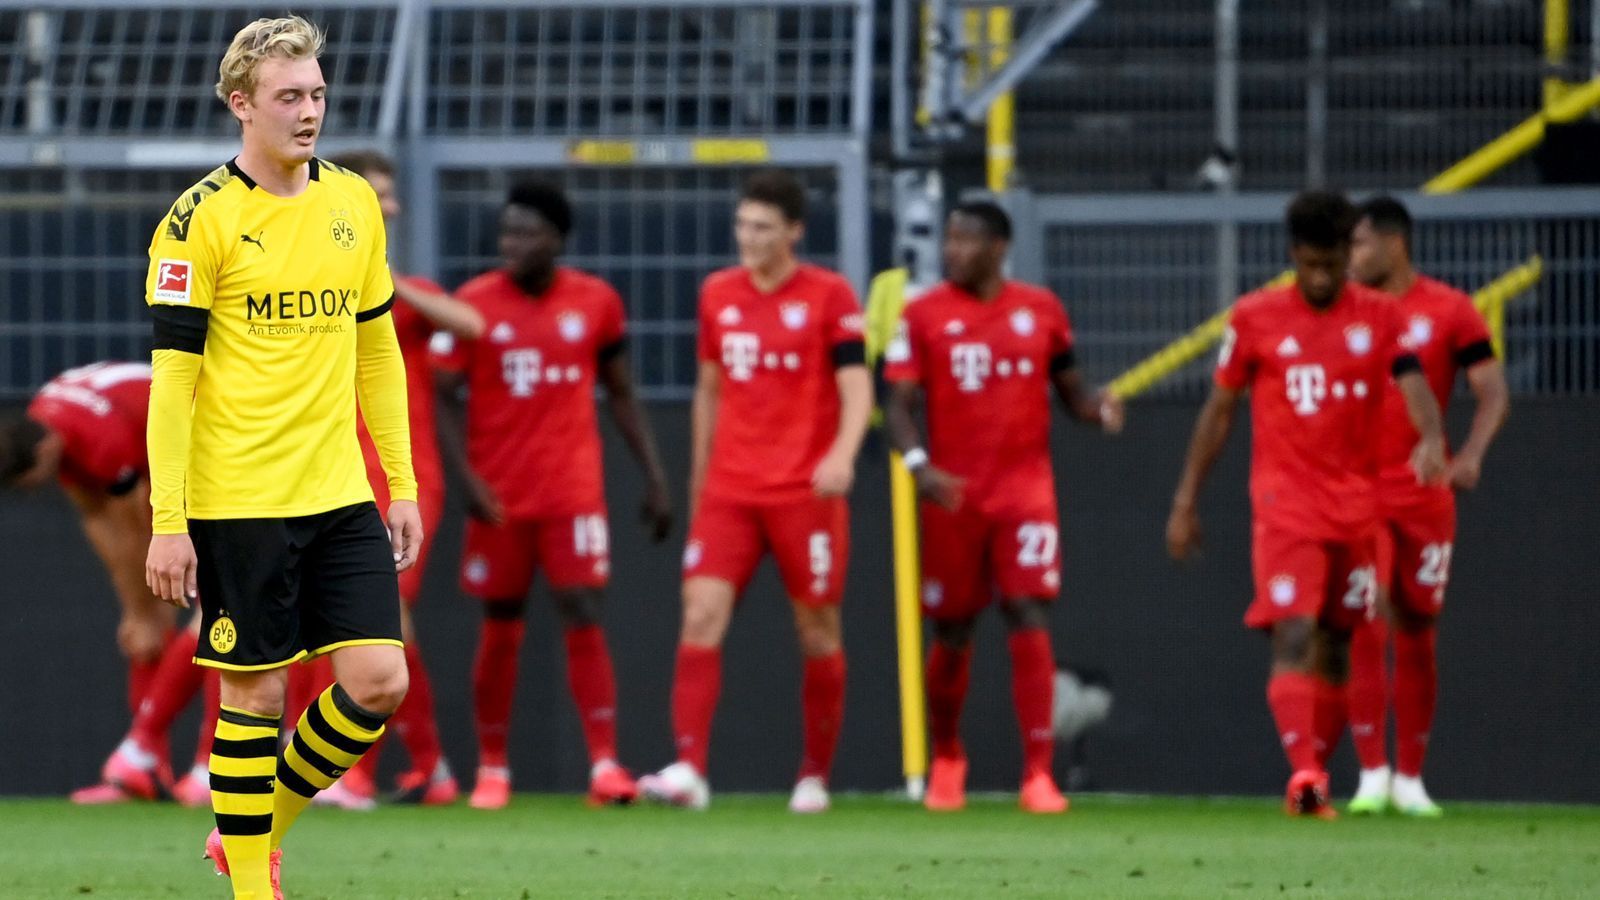 
                <strong>Die Konkurrenz des FC Bayern</strong><br>
                Dortmund bleibt auch das Thema, wenn man sich über die schwache Bayern-Konkurrenz in der Bundesliga unterhält. Denn sowohl der BVB als auch Leipzig und Borussia Mönchengladbach hatten im Laufe der Saison 2019/20 jeweils die Chance, den vor allem im Herbst schwächelnden Bayern zu enteilen - geschafft hat es mal wieder keines der anderen Teams. Nach und nach brachen die drei Hauptkonkurrenten der Münchner im Verlaufe der Spielzeit ein und so hatten die Münchner um Kovac-Nachfolger Hansi Flick mal wieder recht leichtes Spiel, den mittlerweile achten Meistertitel in Folge einzufahren. Schon am 32. Spieltag kürten sich die Bayern zum alten und neuen Bundesliga-Champion - weil allen, potenziellen Konkurrenten die Konstanz fehlte.
              